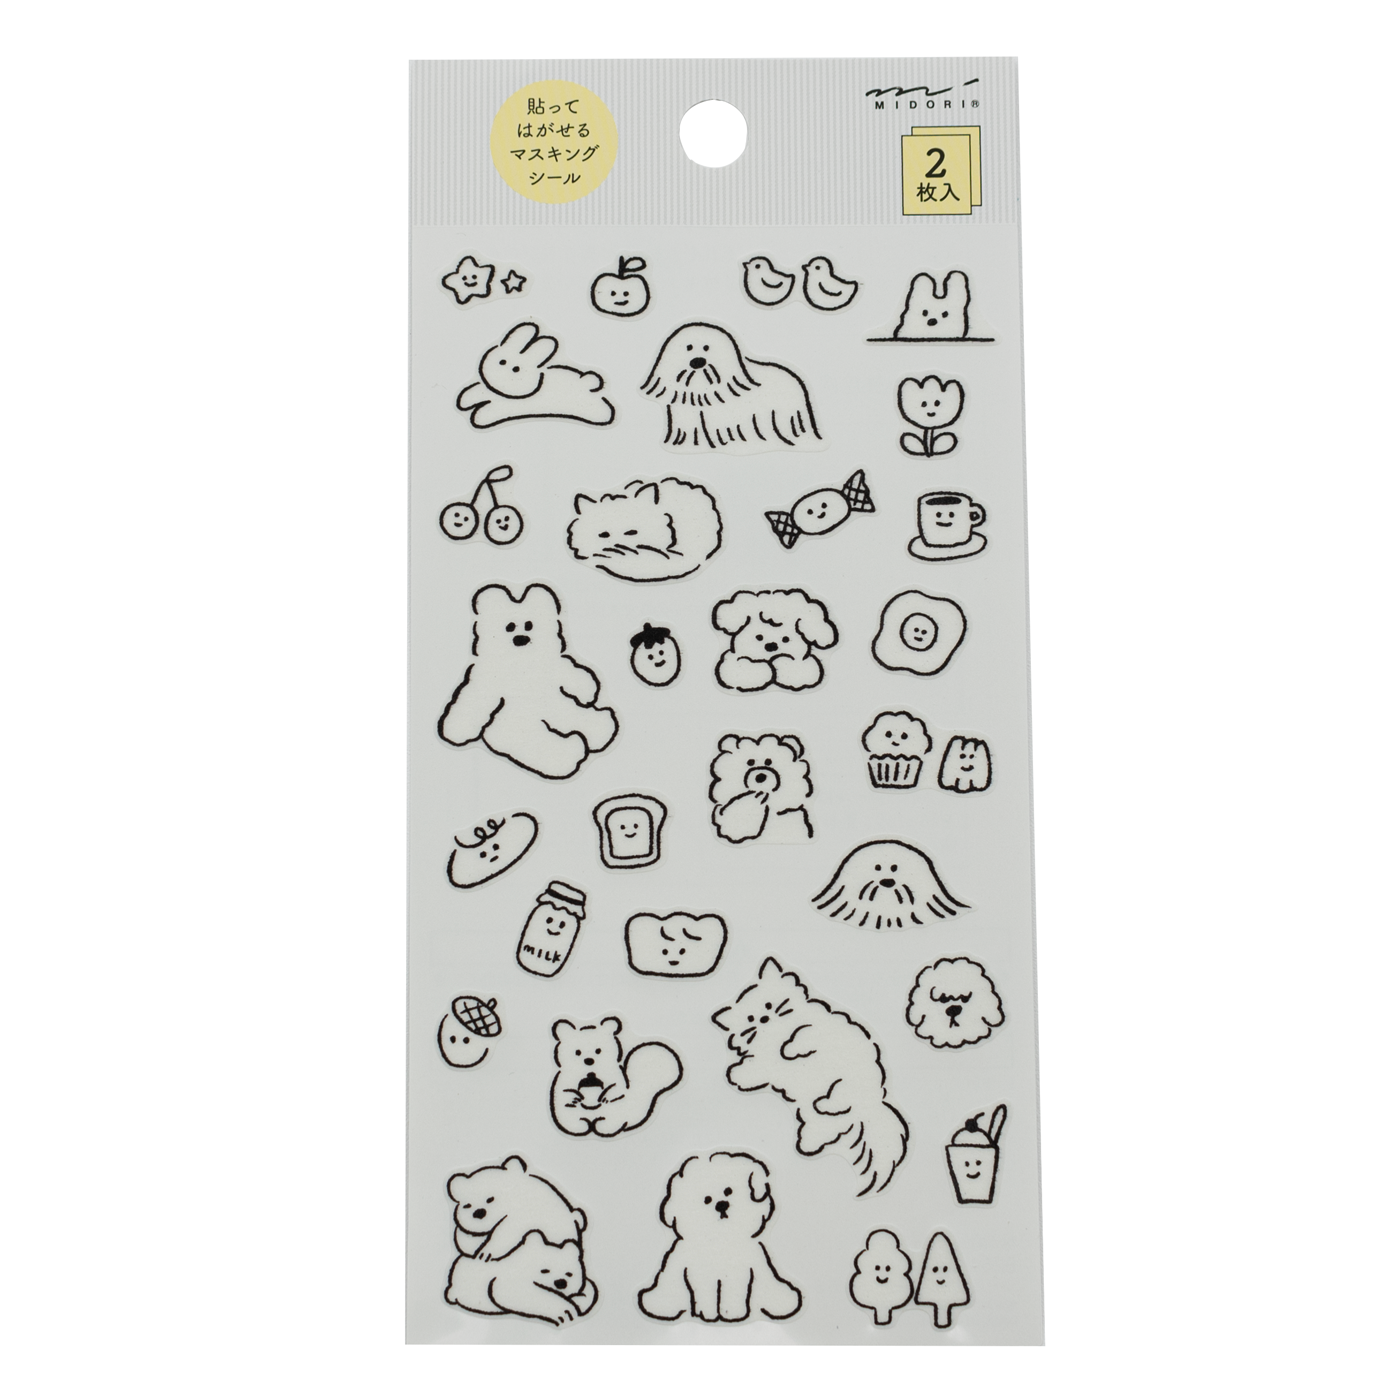 Midori Notebook Stickers - Cute Motif